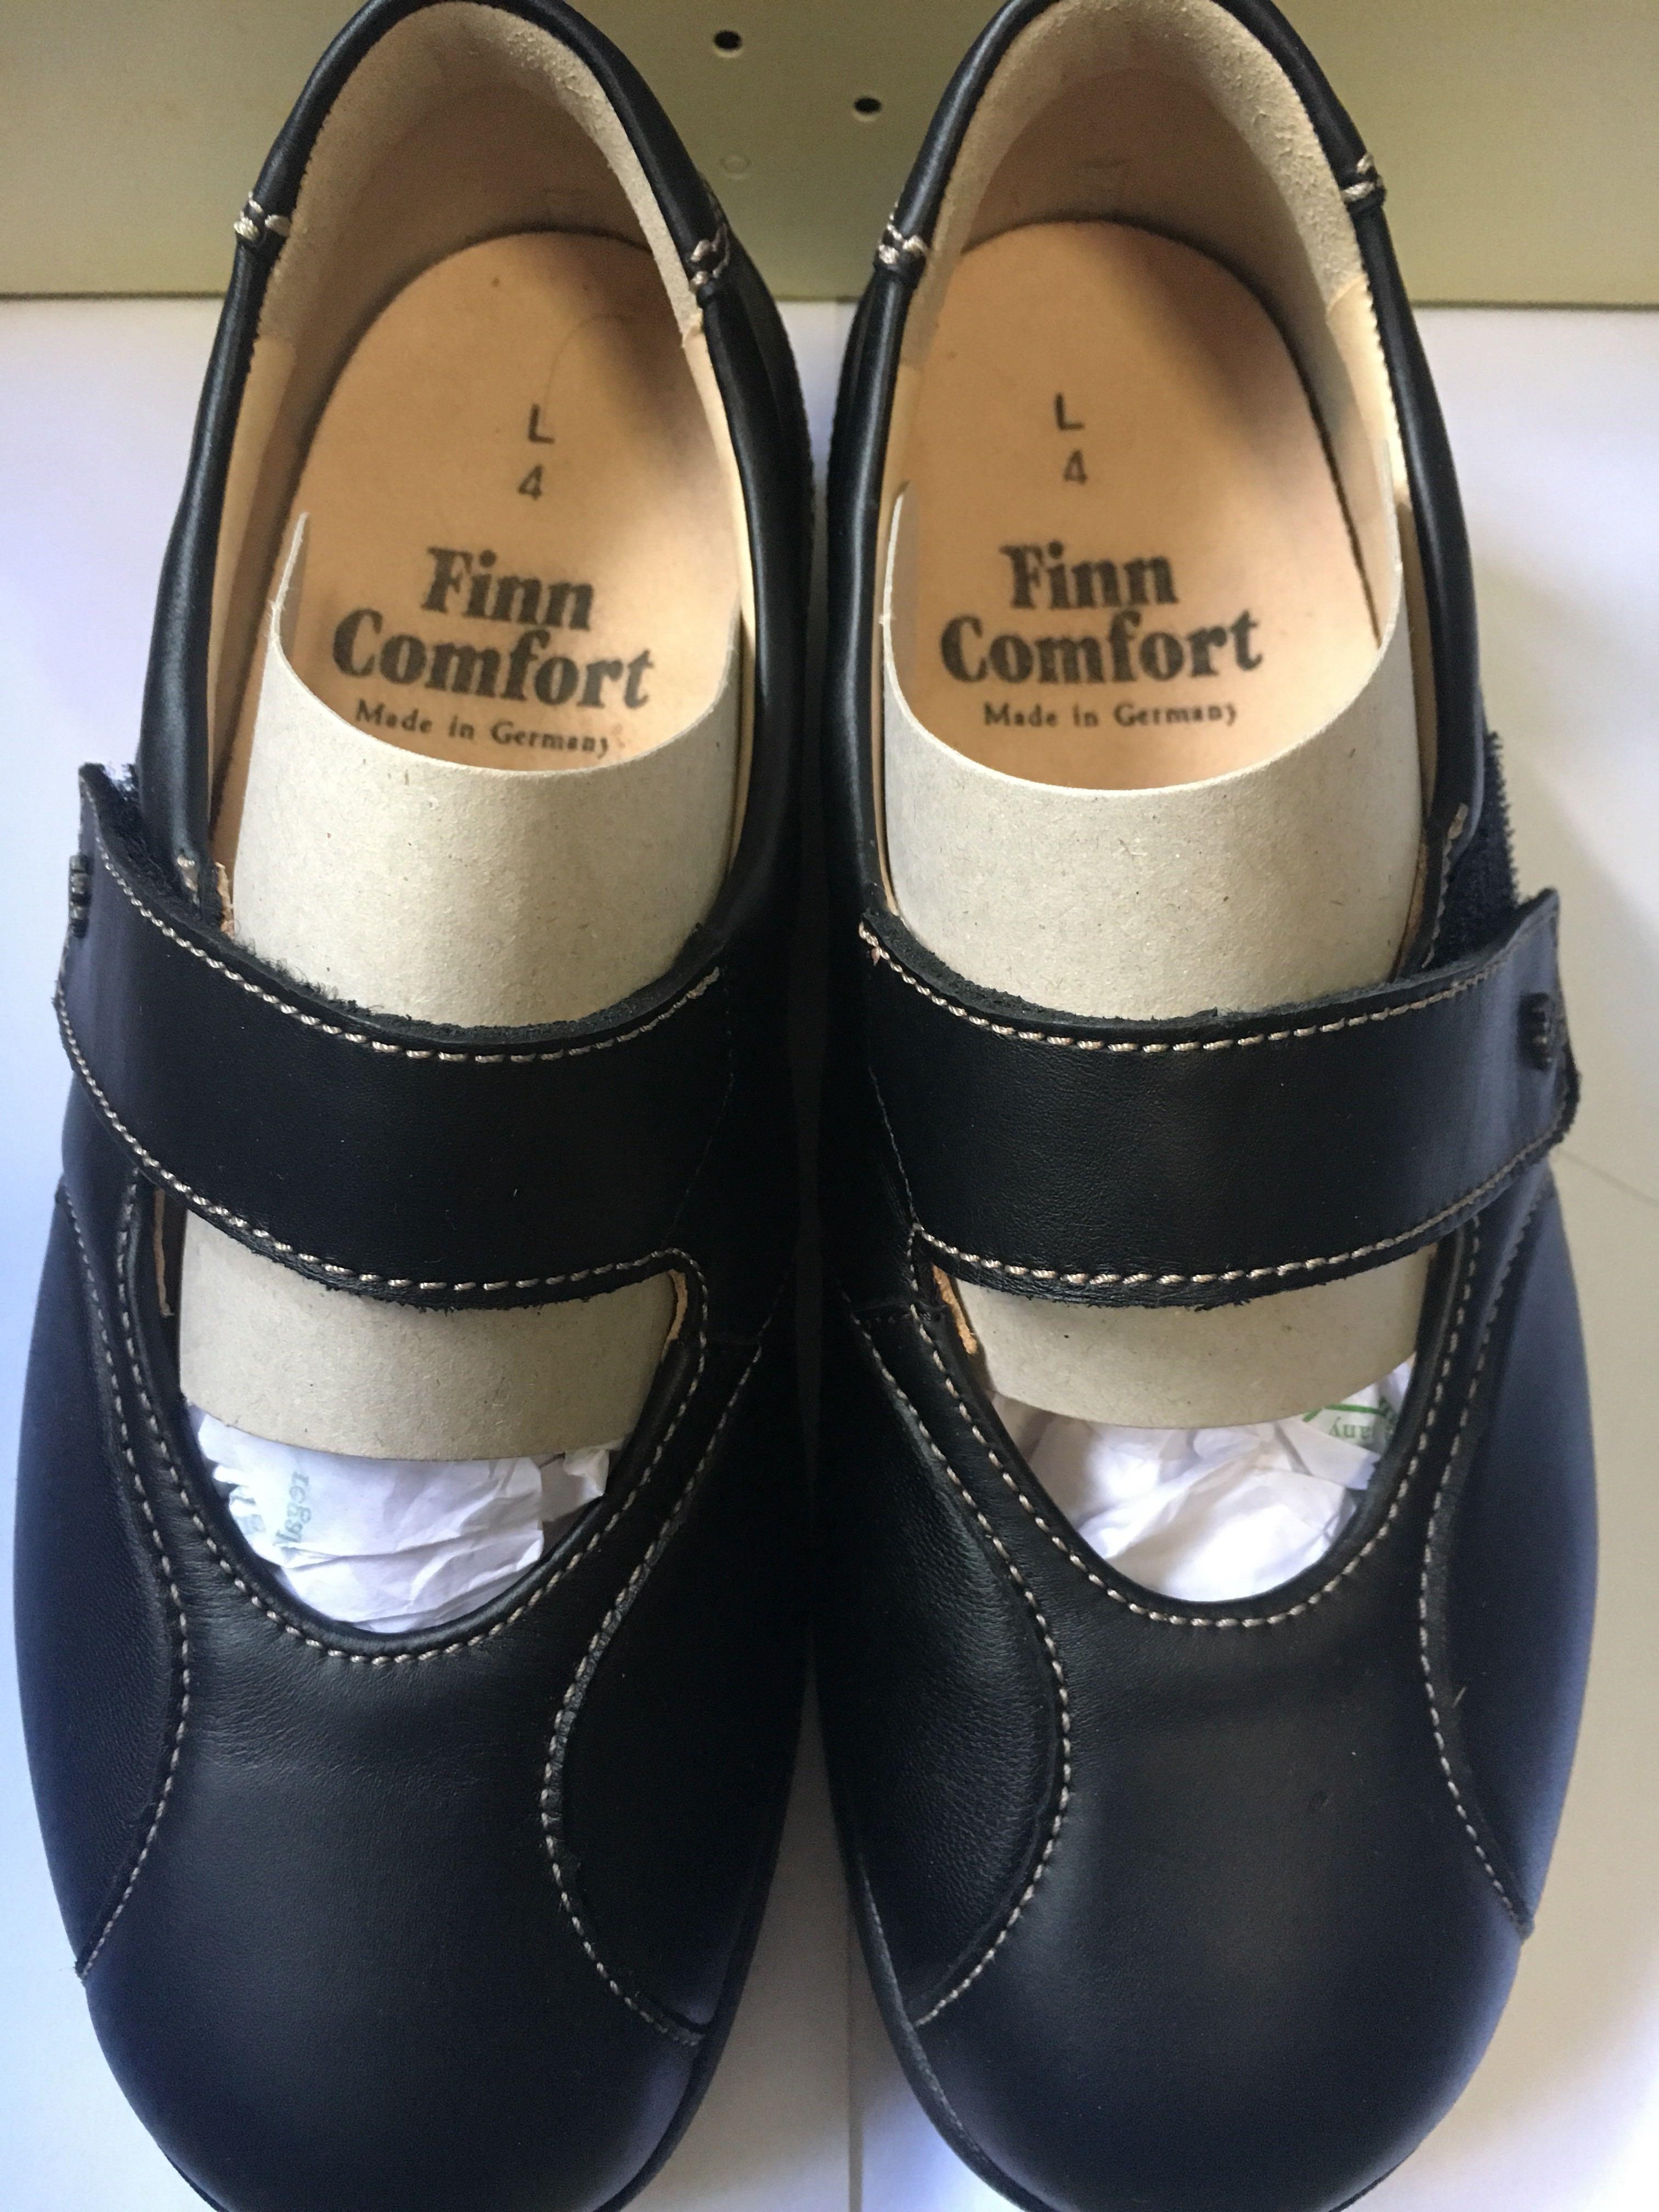 Finn comfort shoes, Women's Fashion 